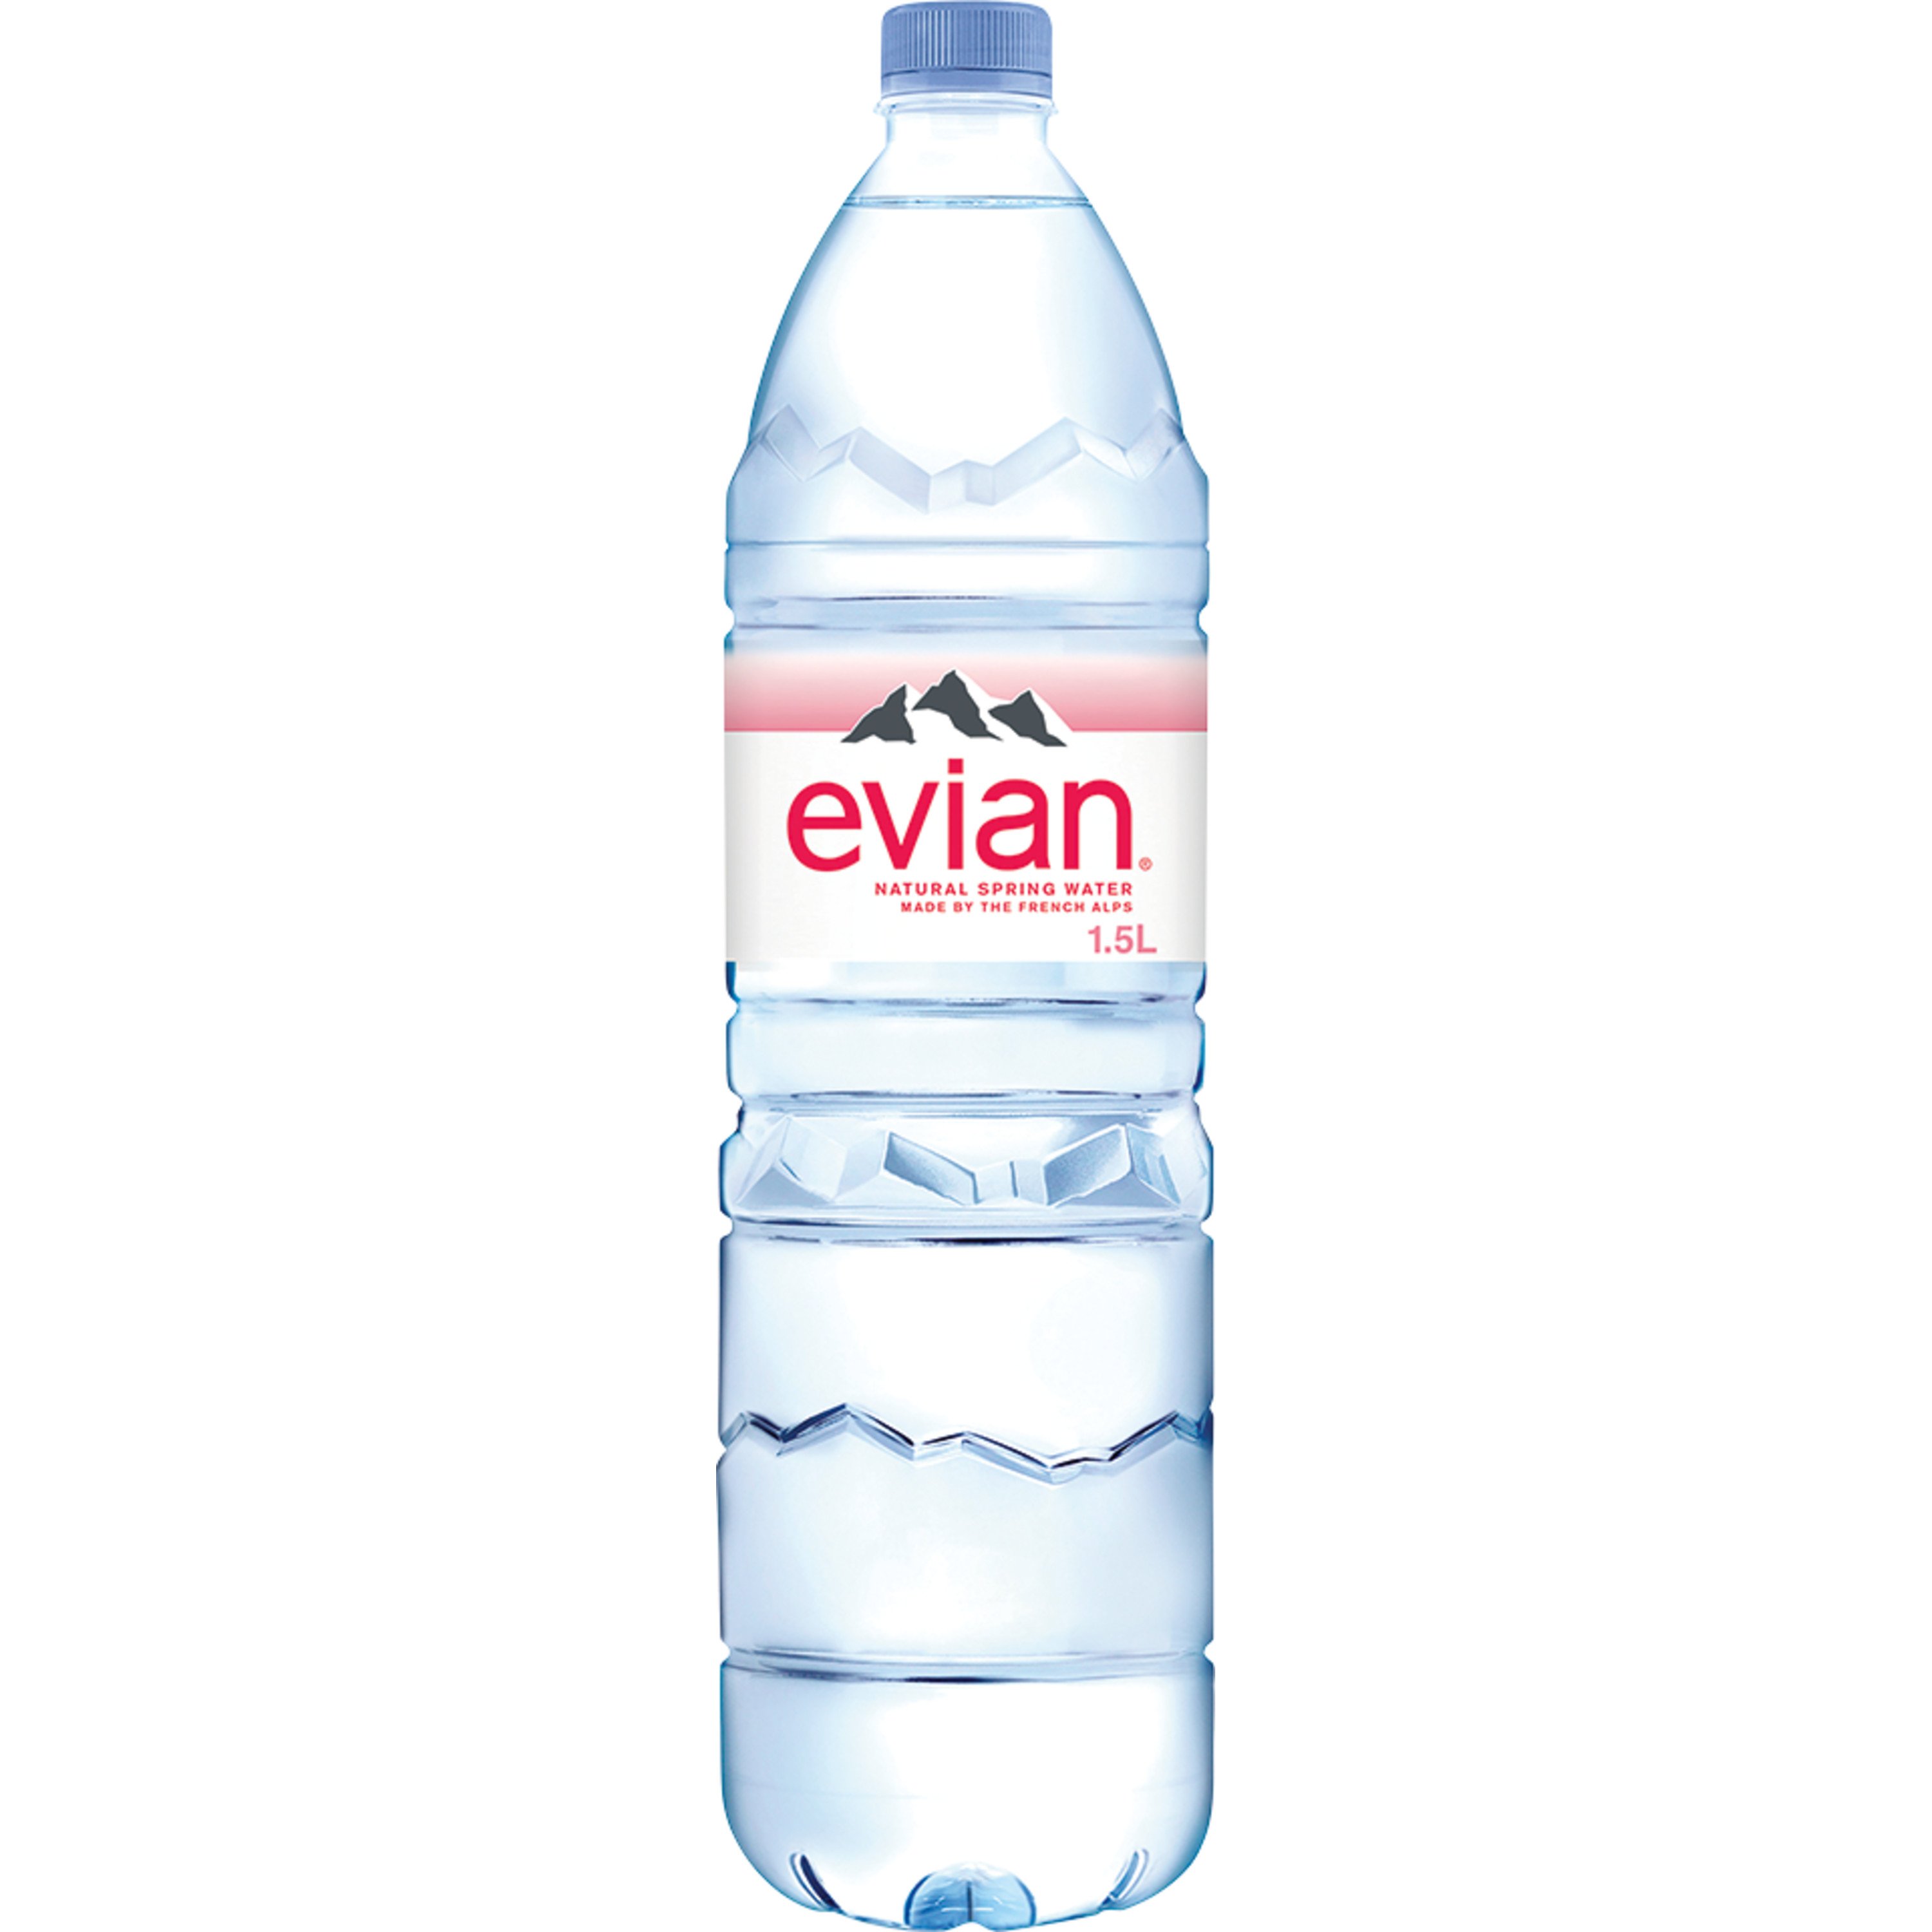 Evian Natural Spring Water - Shop Water at H-E-B